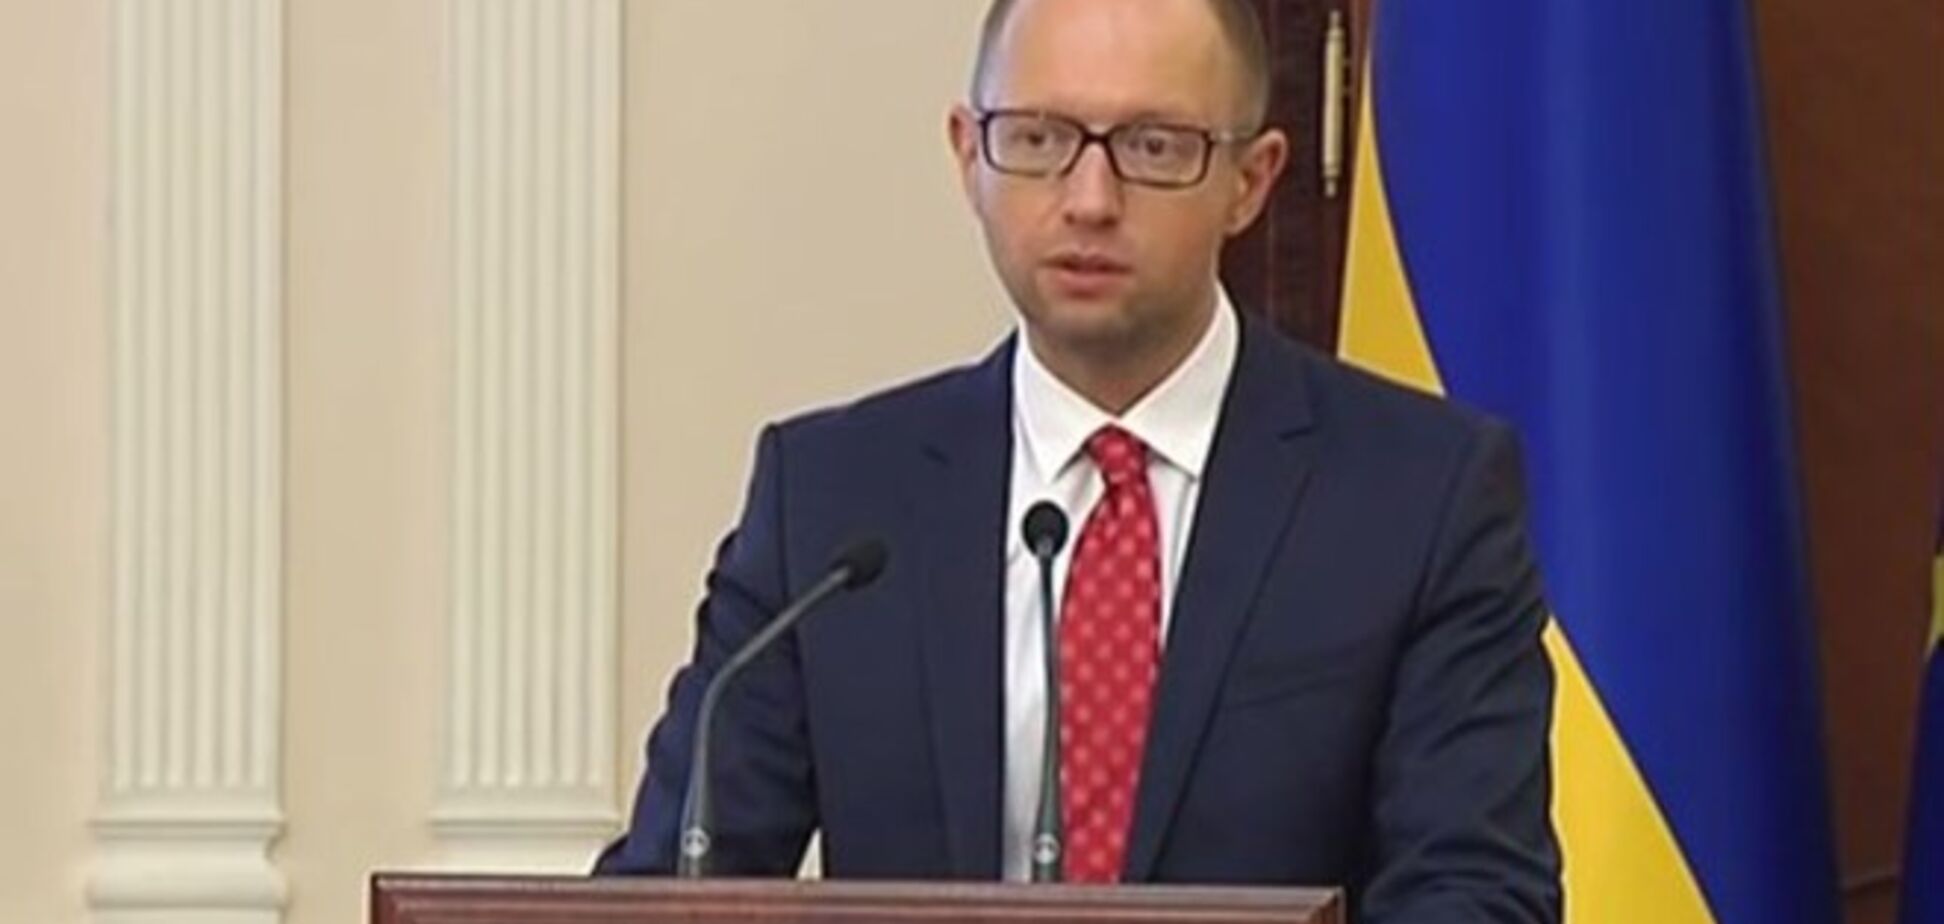 Яценюк представил план 'Восстановление Украины': главные пункты